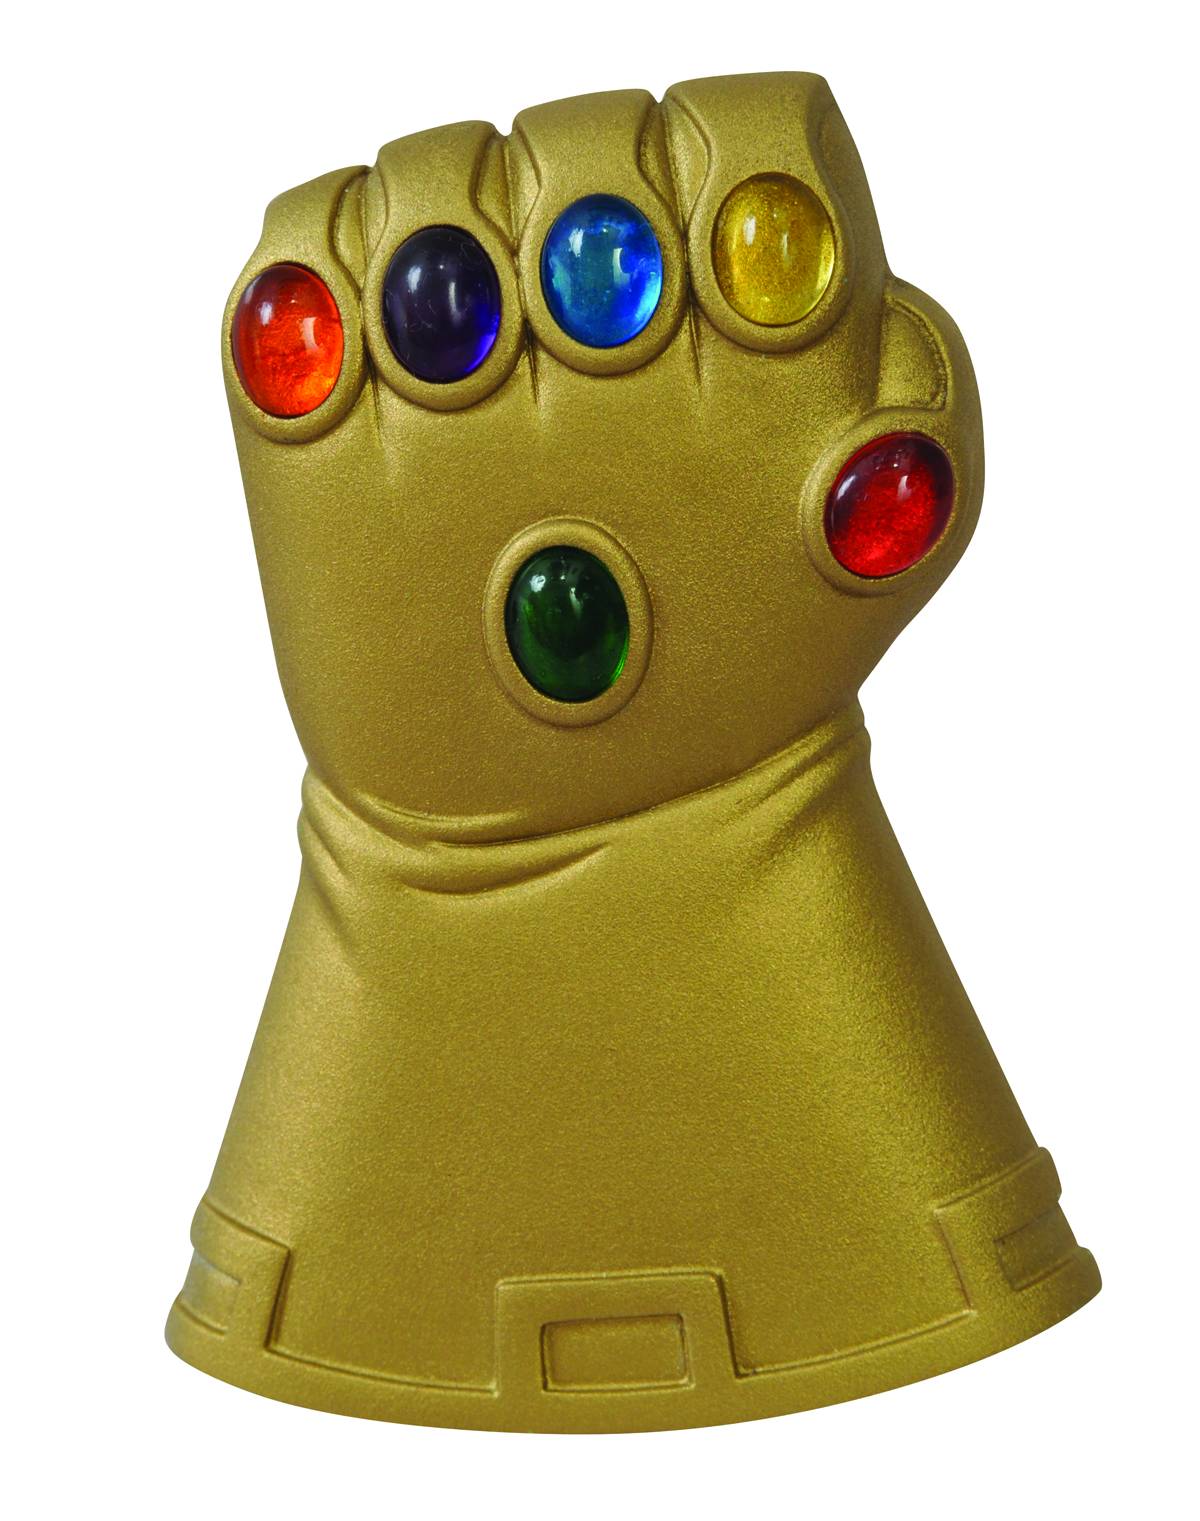 Avengers Endgame Thanos Iron Man Glove Infinity Gauntlet Beer Bottle Opener Prop